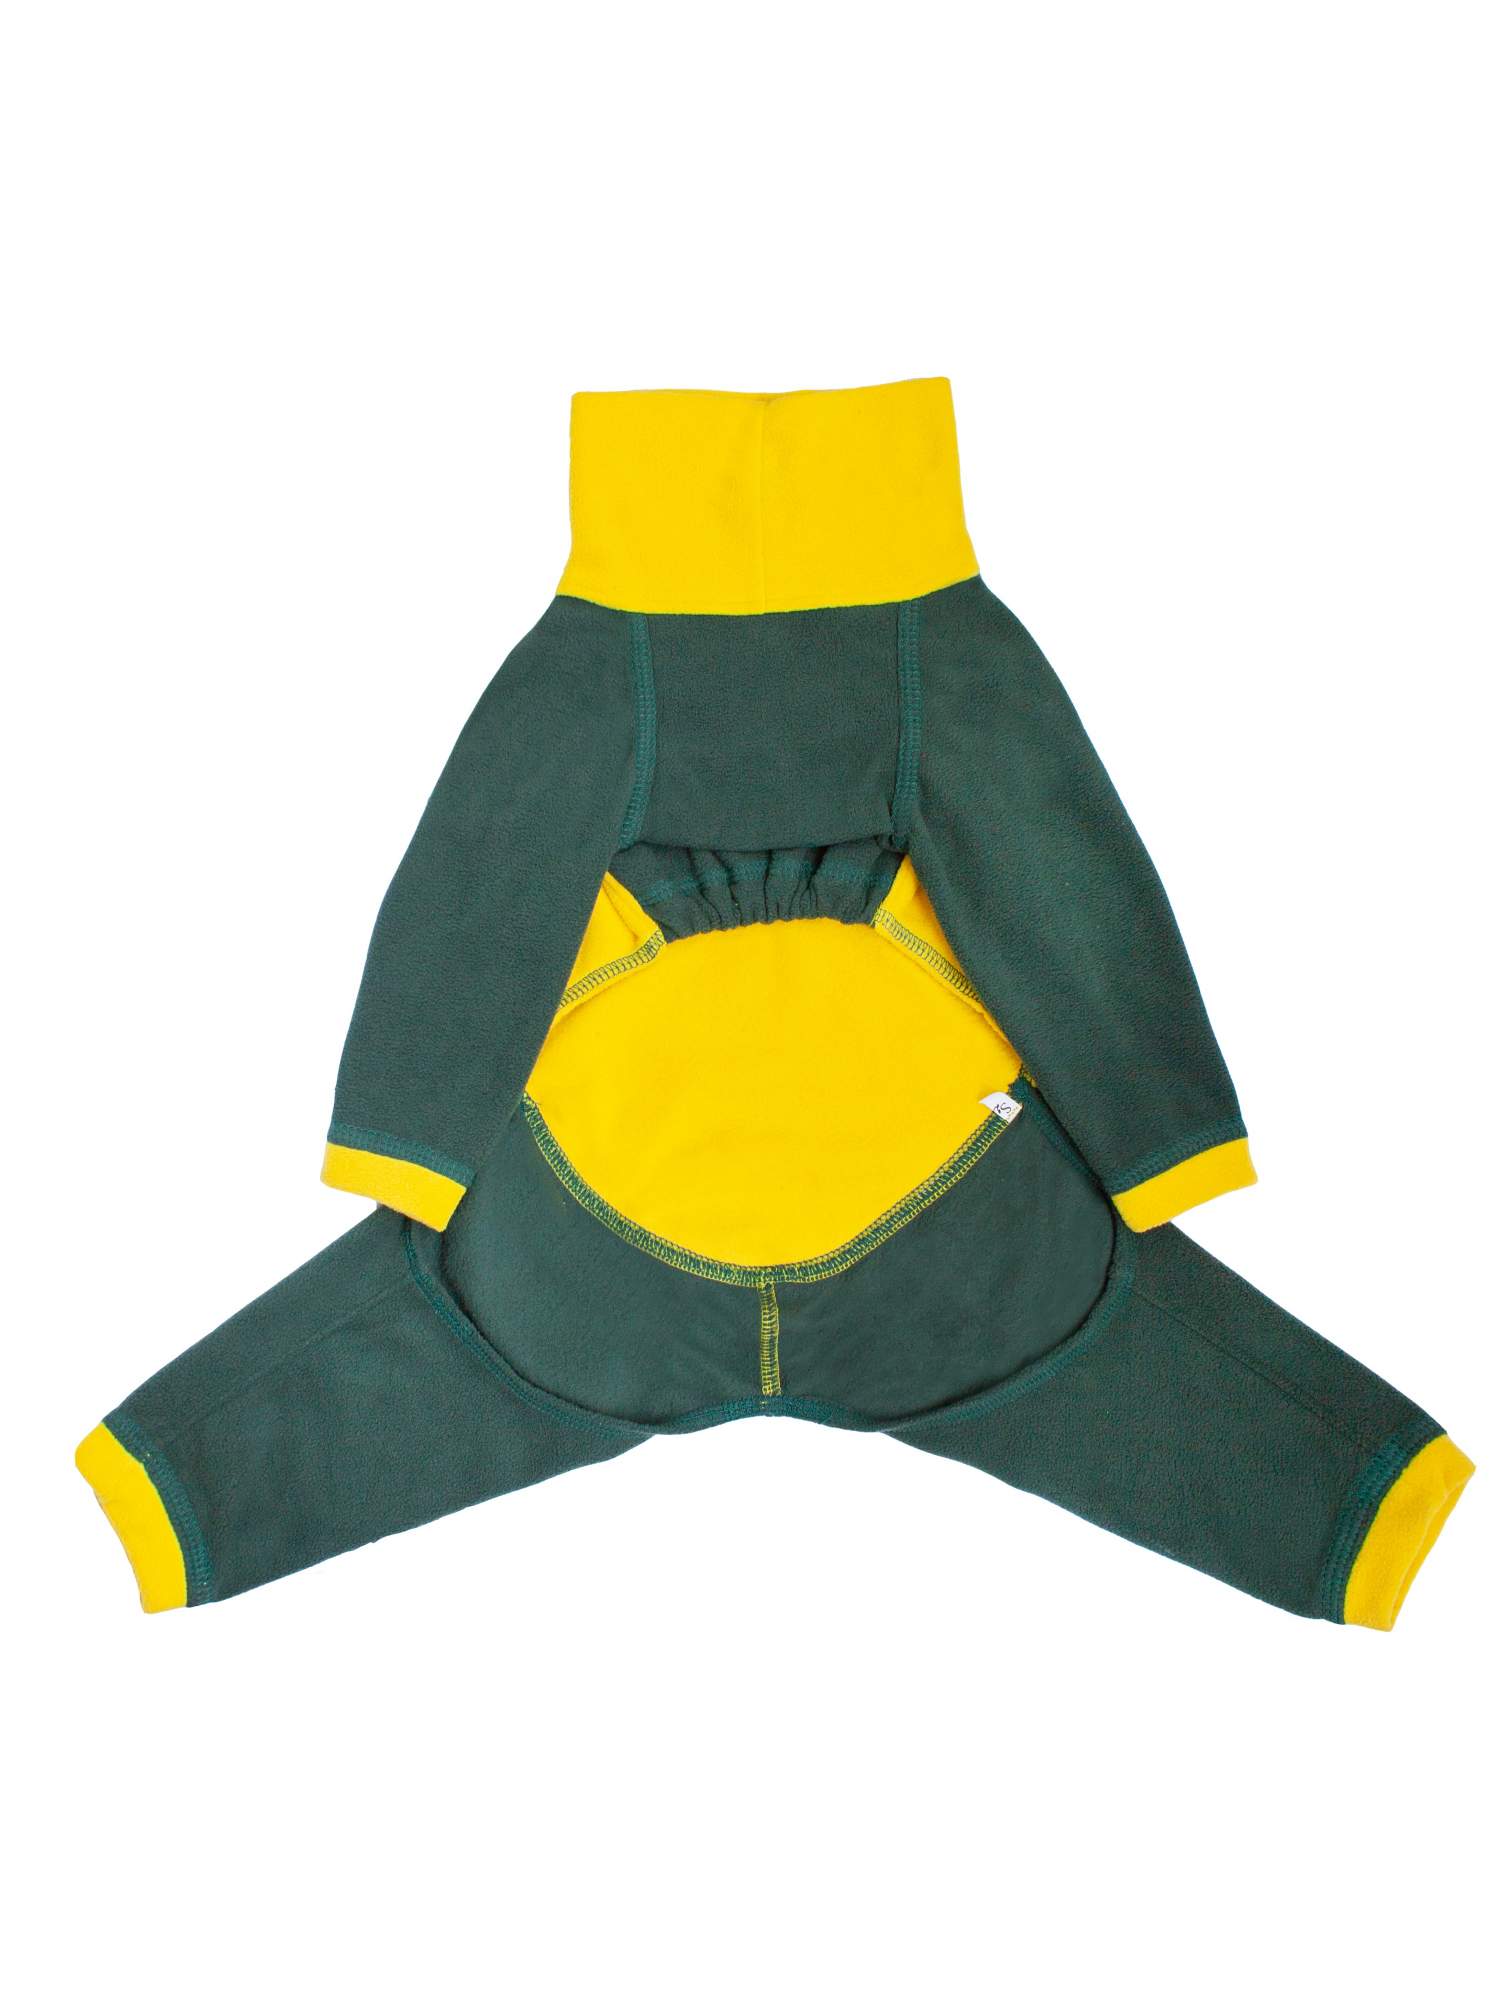 Комбинезон для собак Монморанси, цвет желто-зеленый, флис, длина спины 38 см